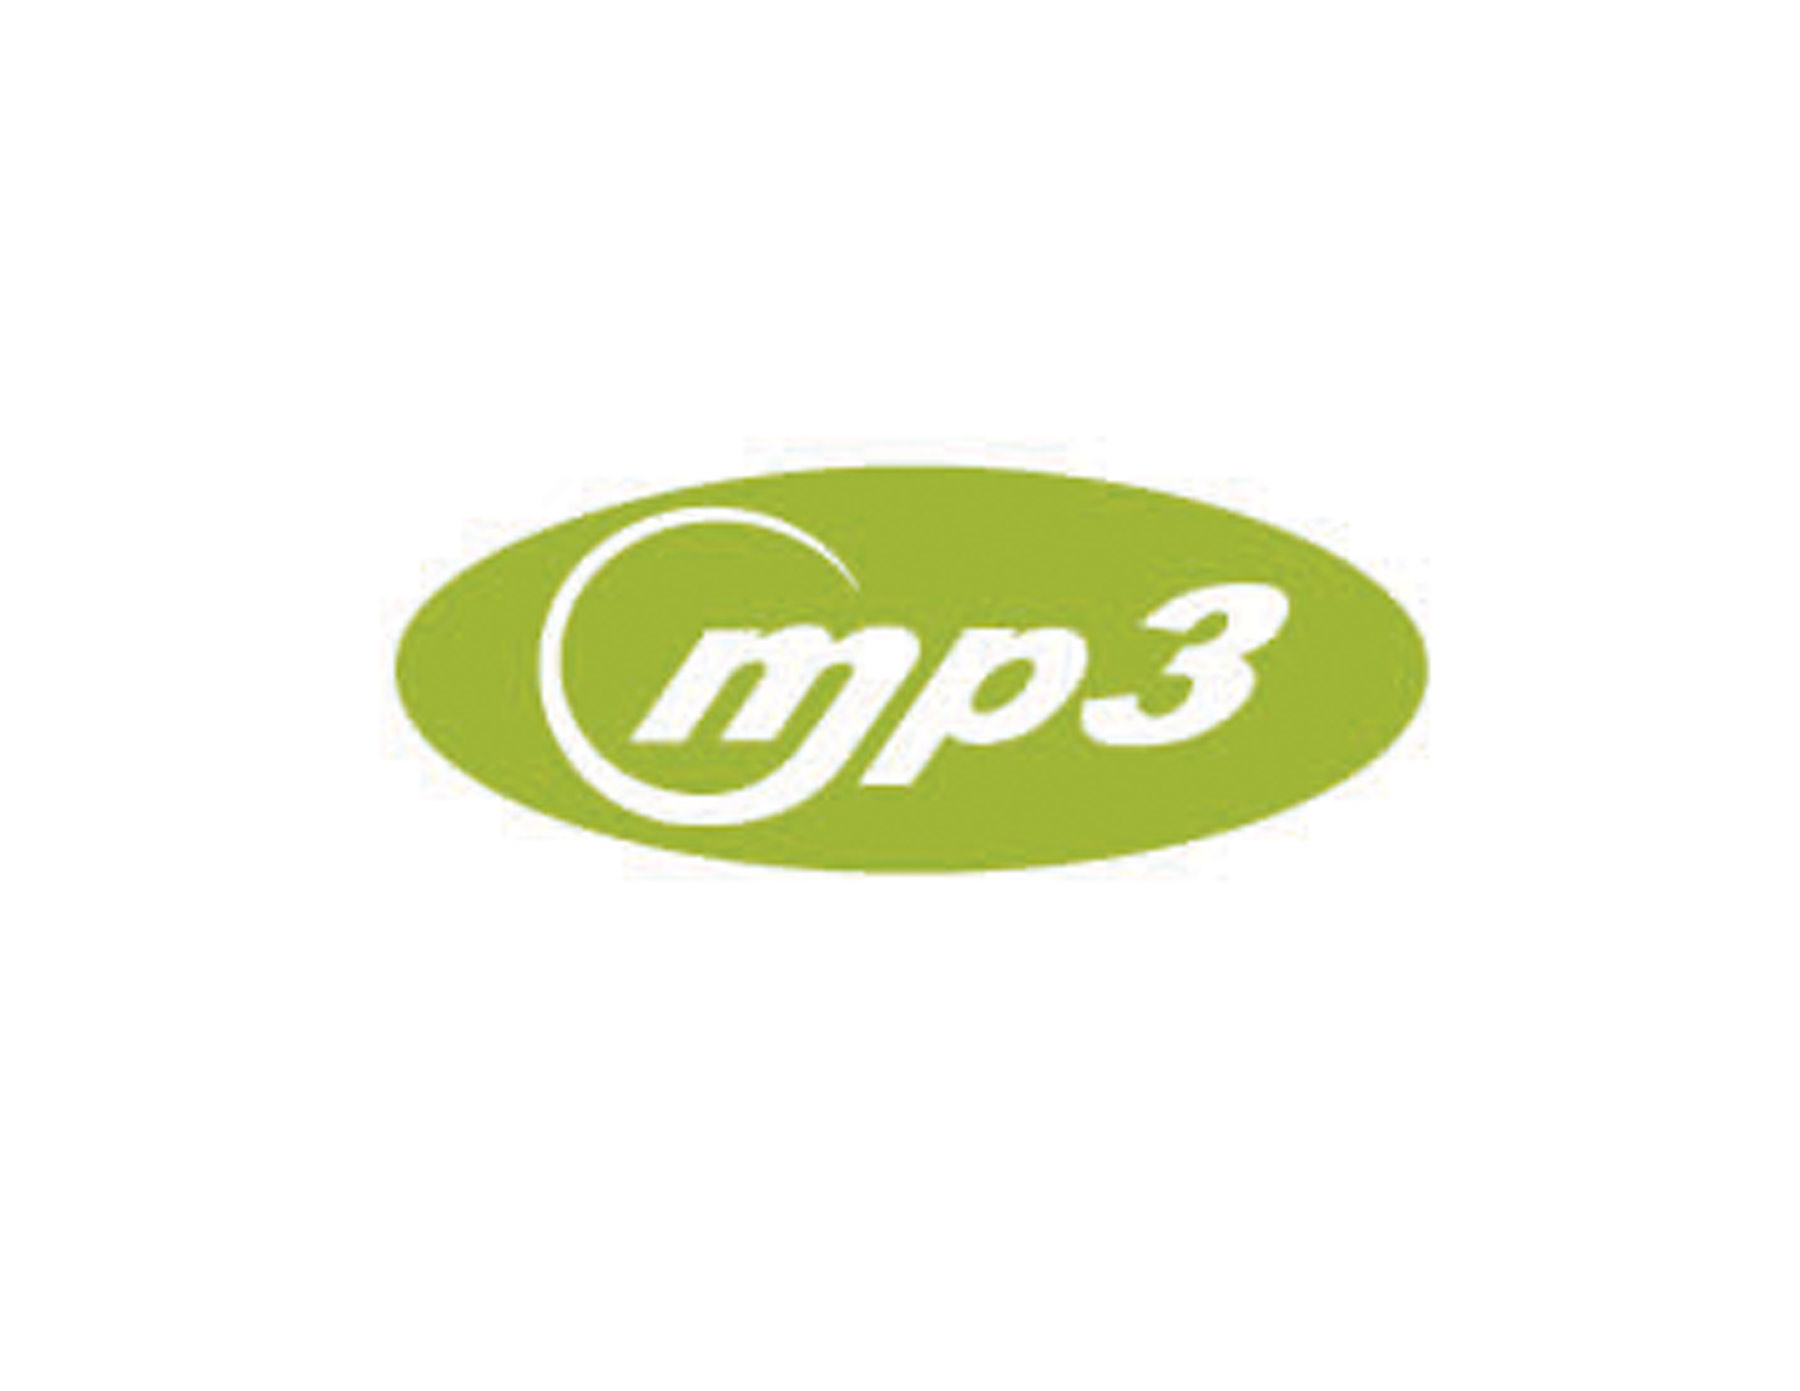 MP3商标图形用绿色的椭圆形体现轻快舒心的感觉